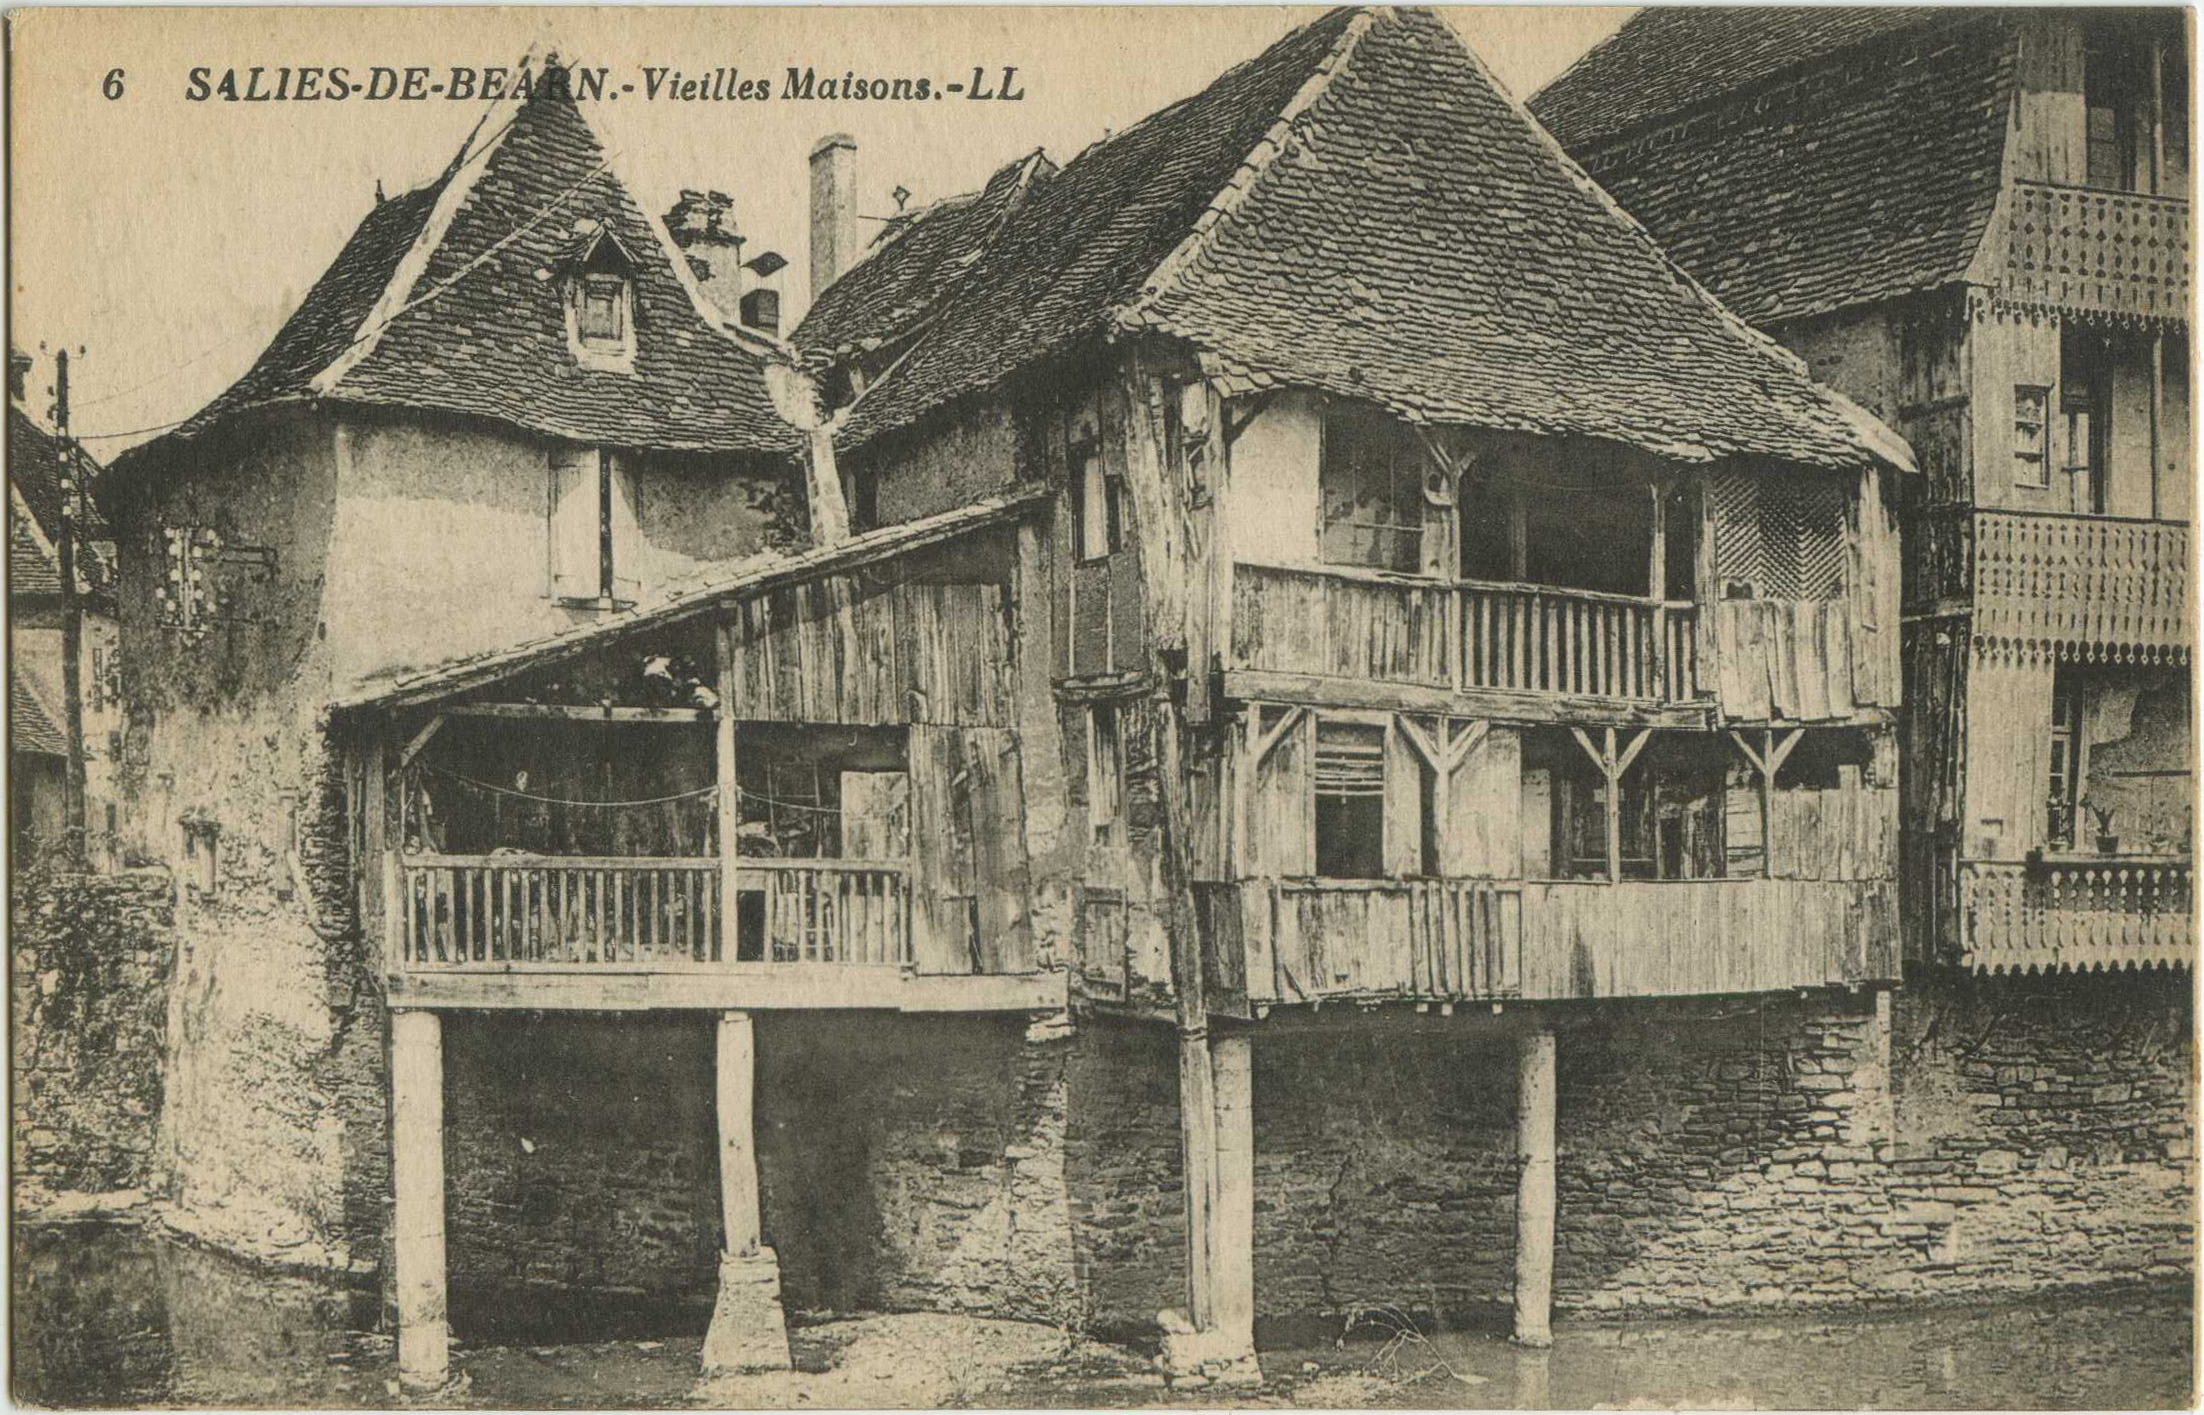 Salies-de-Béarn - Vieilles Maisons.